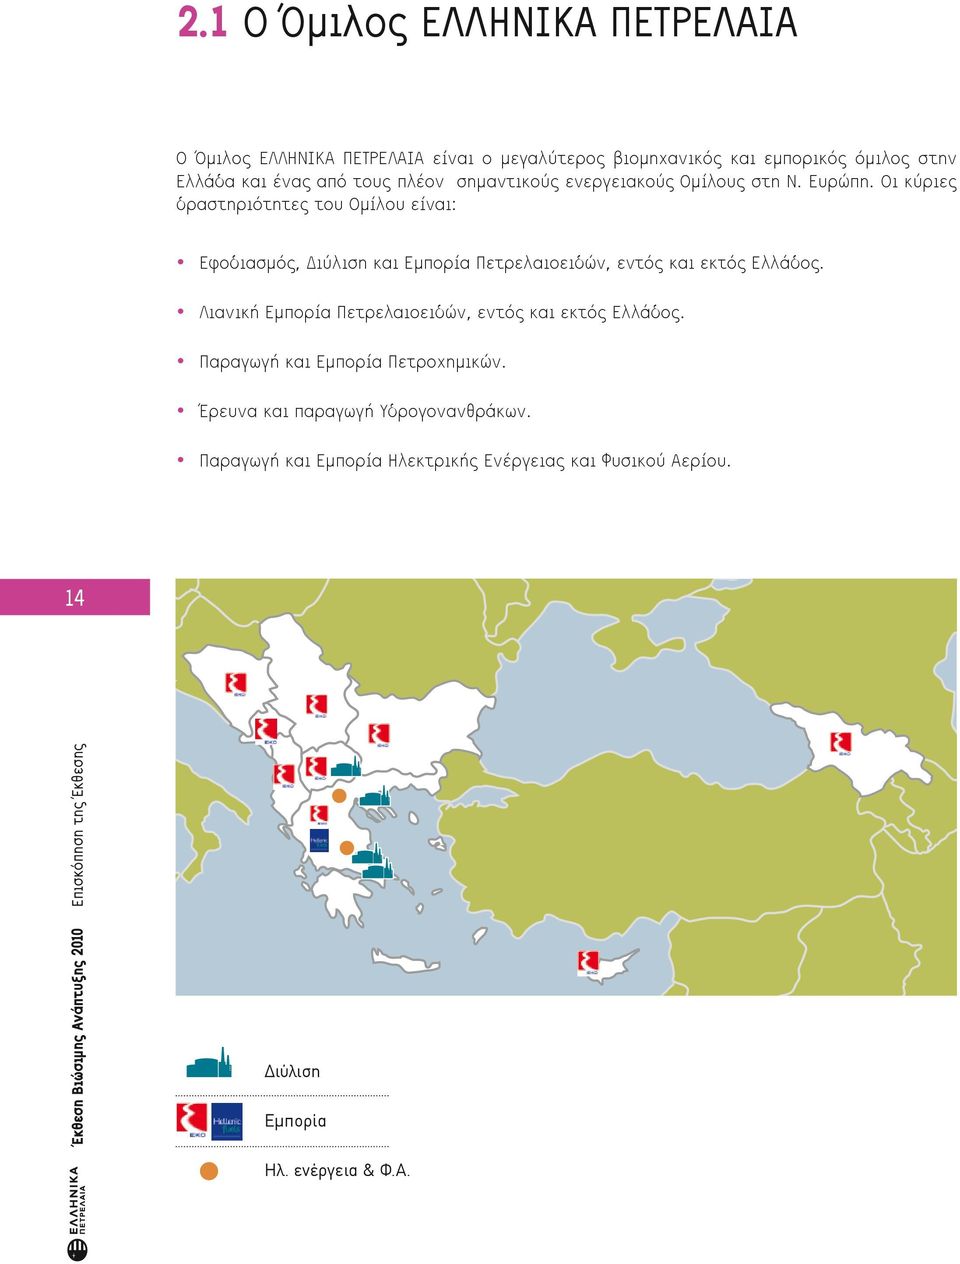 Οι κύριες δραστηριότητες του Ομίλου είναι: Εφοδιασμός, Διύλιση και Εμπορία Πετρελαιοειδών, εντός και εκτός Ελλάδος.